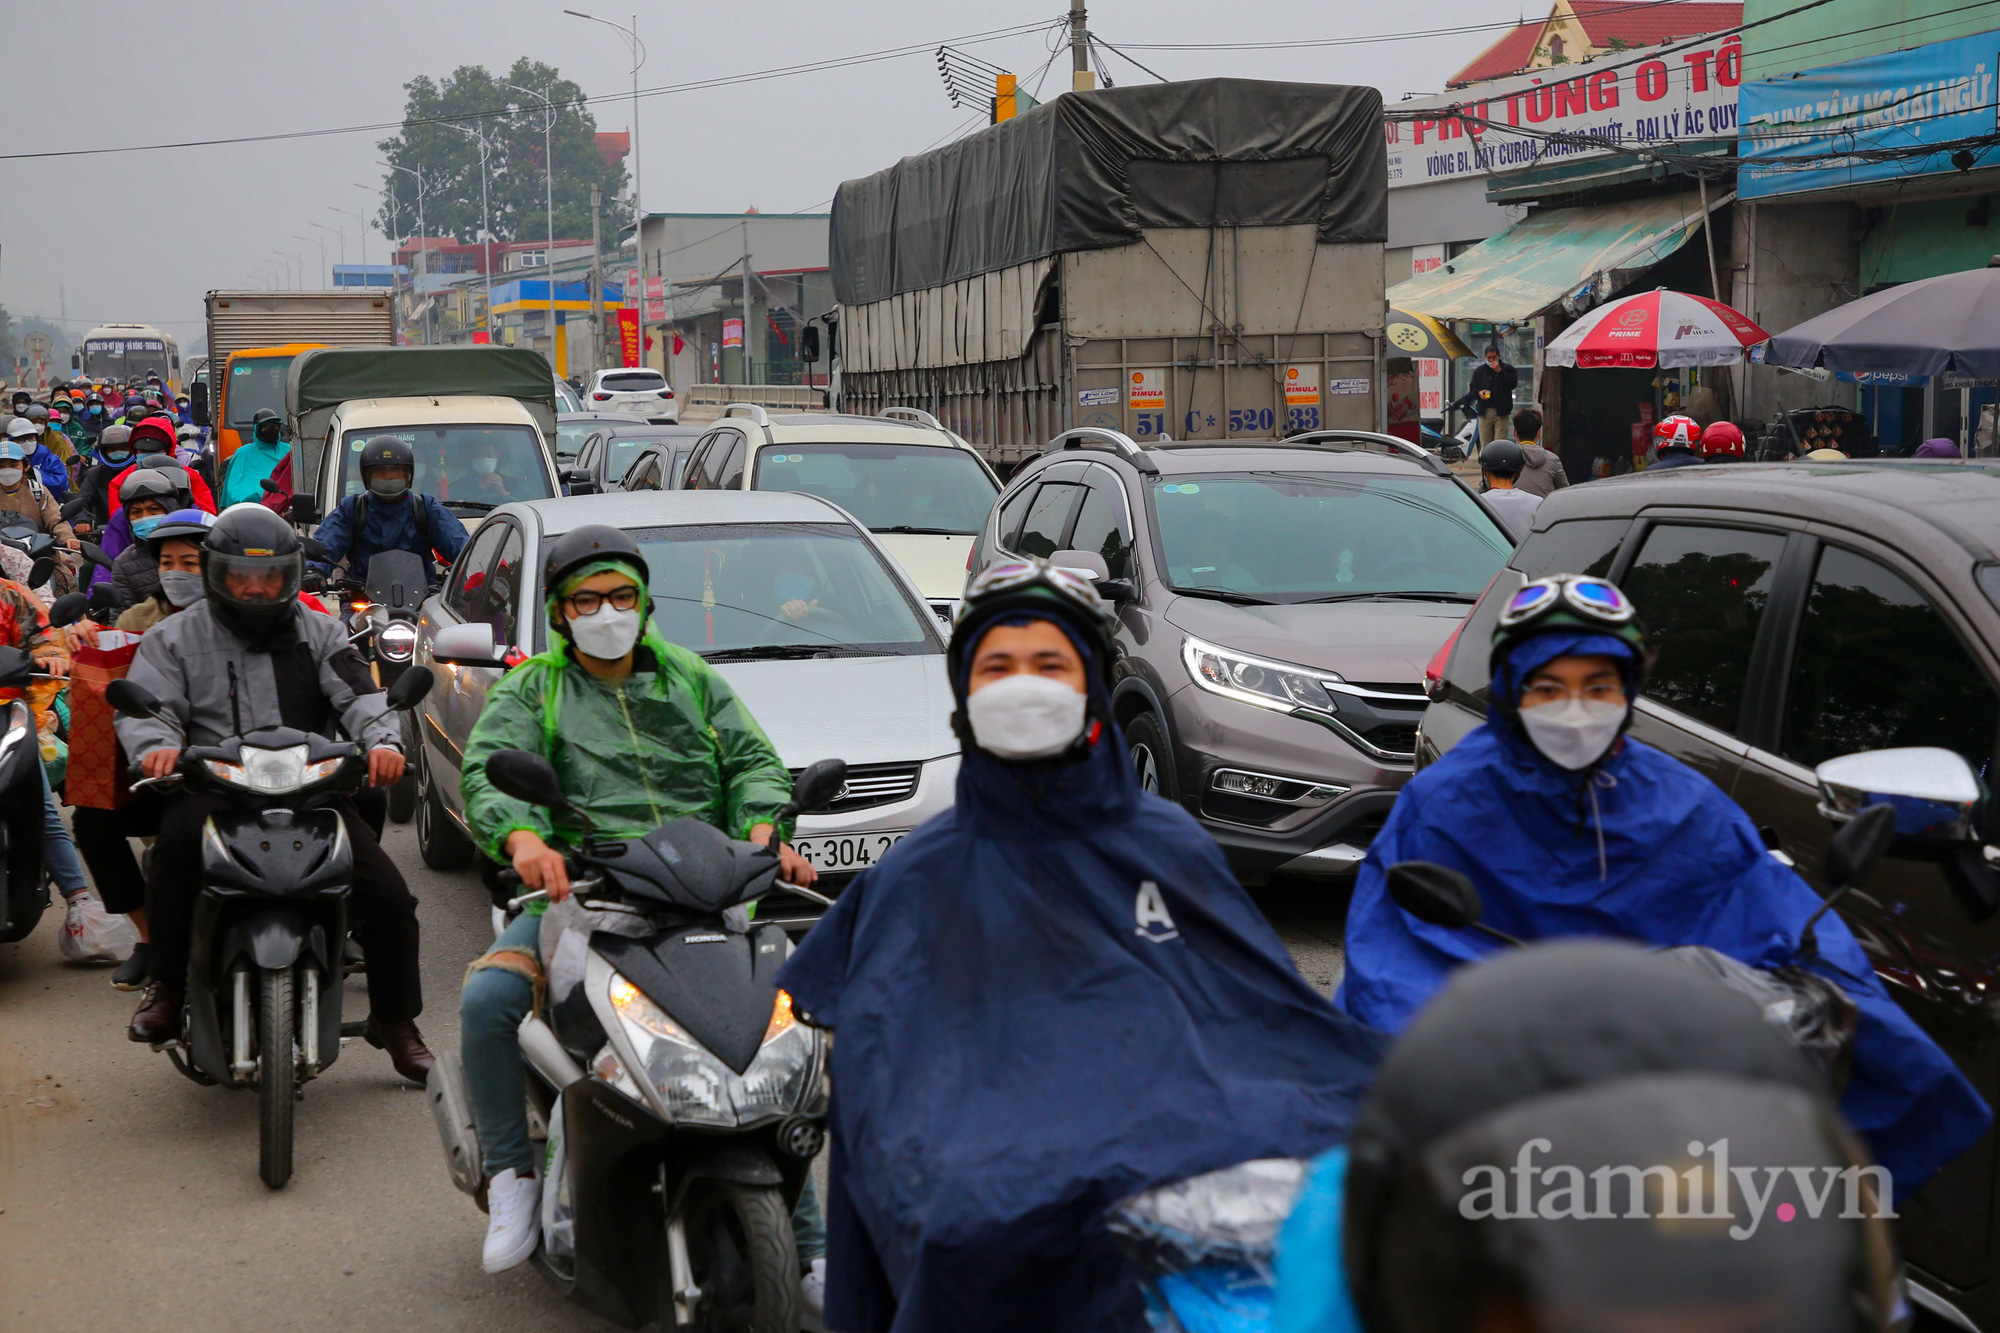 Hà Nội: Hàng nghìn người chạy xe máy trùm kín áo mưa, ùn ùn rời phố về quê ăn Tết - Ảnh 8.